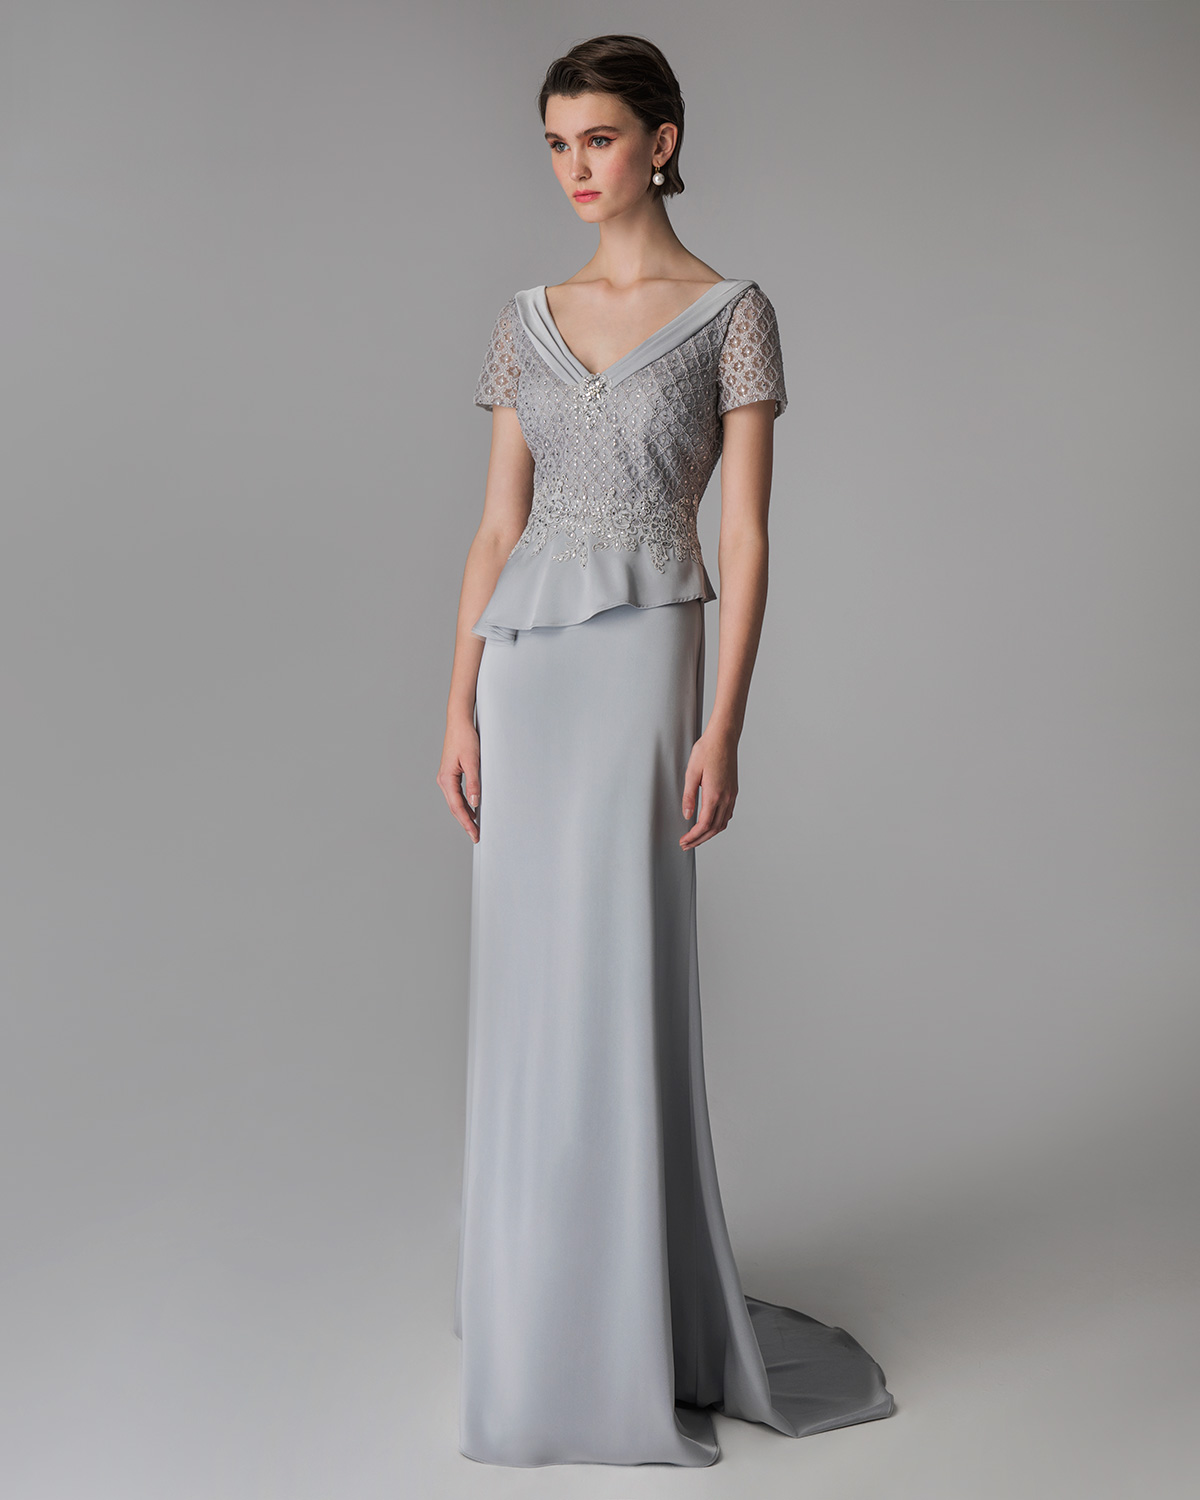 Κλασικό φόρεμα μακρύ για γάμο με κέντημα και κοντά μανίκια